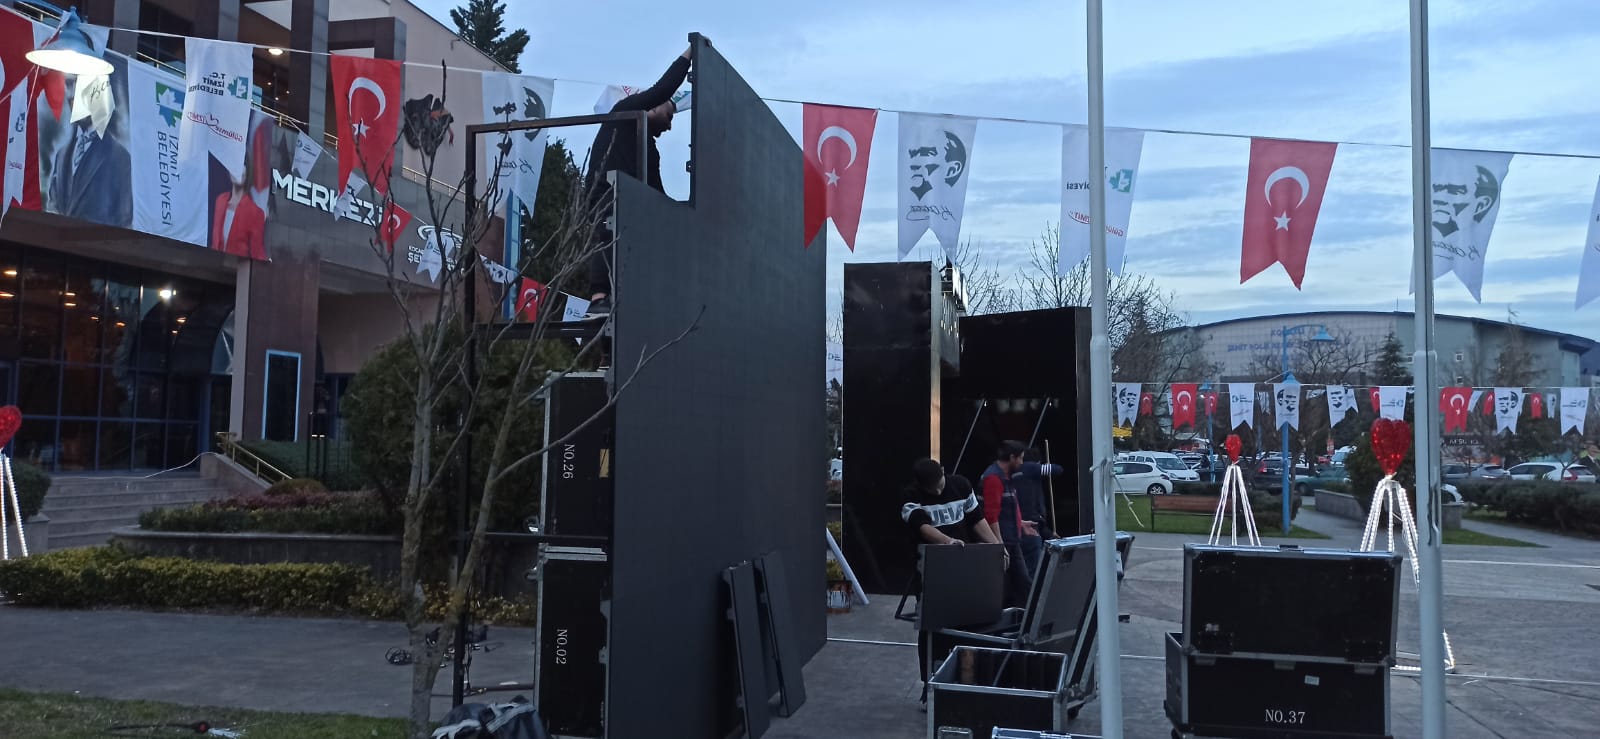 İzmit Belediyesi ‘Leyla Hanım’ galası için SDKM önüne dev ekran yerleştirecek